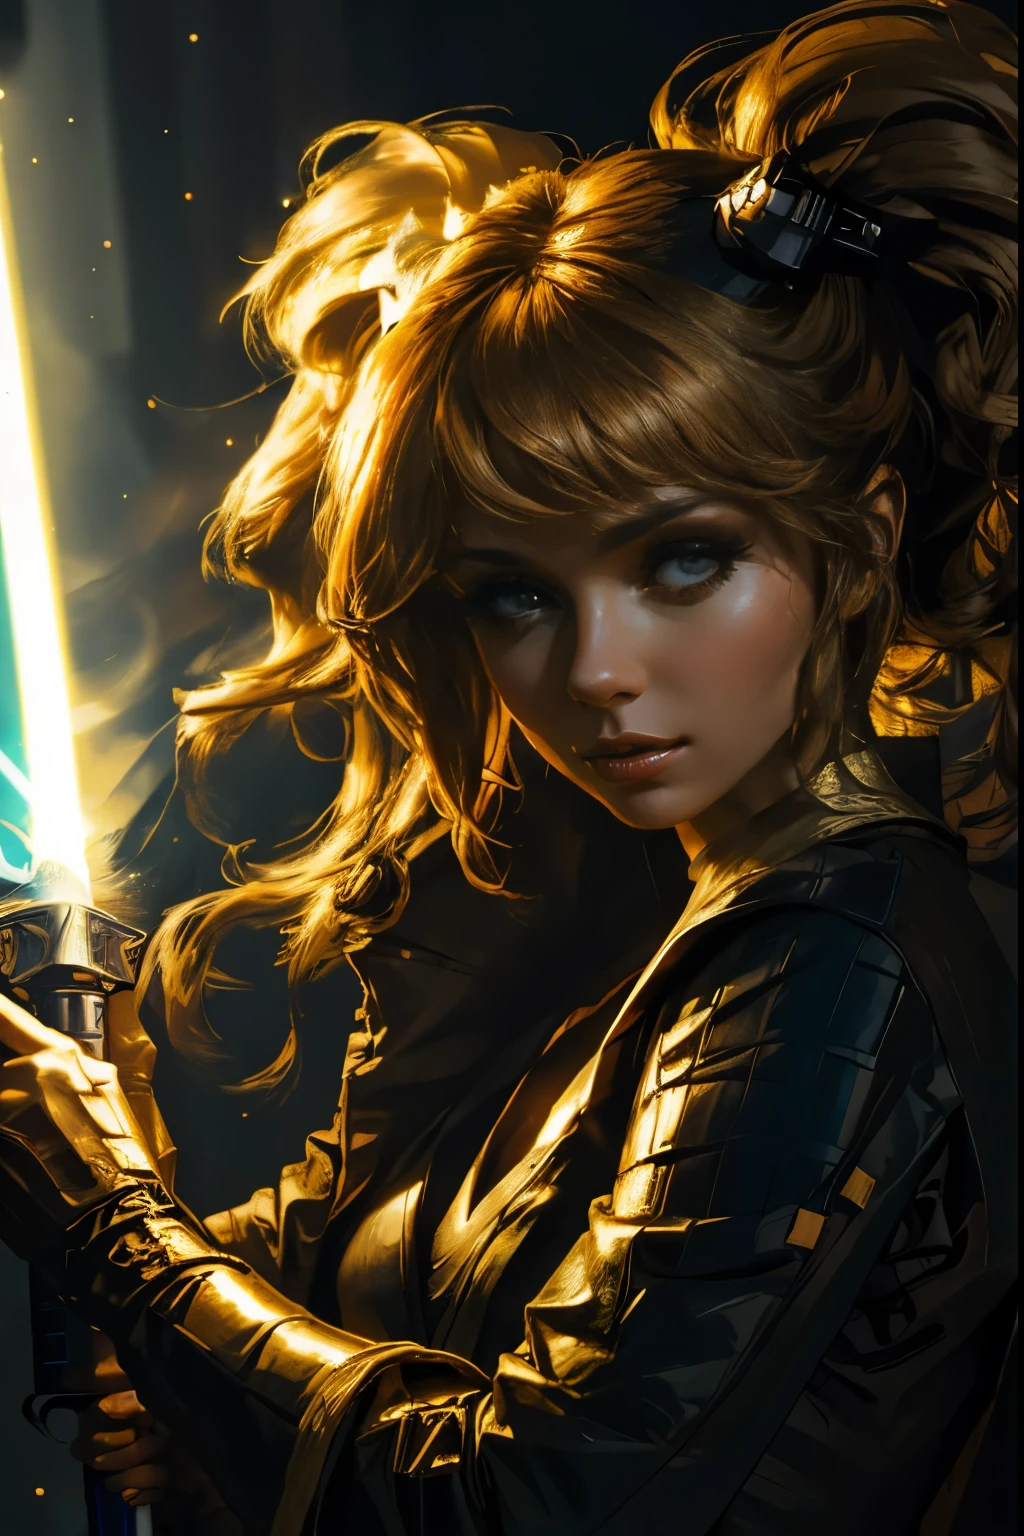 "(melhor qualidade,alta resolução),cavaleiro jedi feminino sexy,lindos olhos detalhados,roupão bronzeado claro para cílios longos,segurando um sabre de luz,retratos,Fundo de Star Wars,cores vivas,iluminação de estúdio"